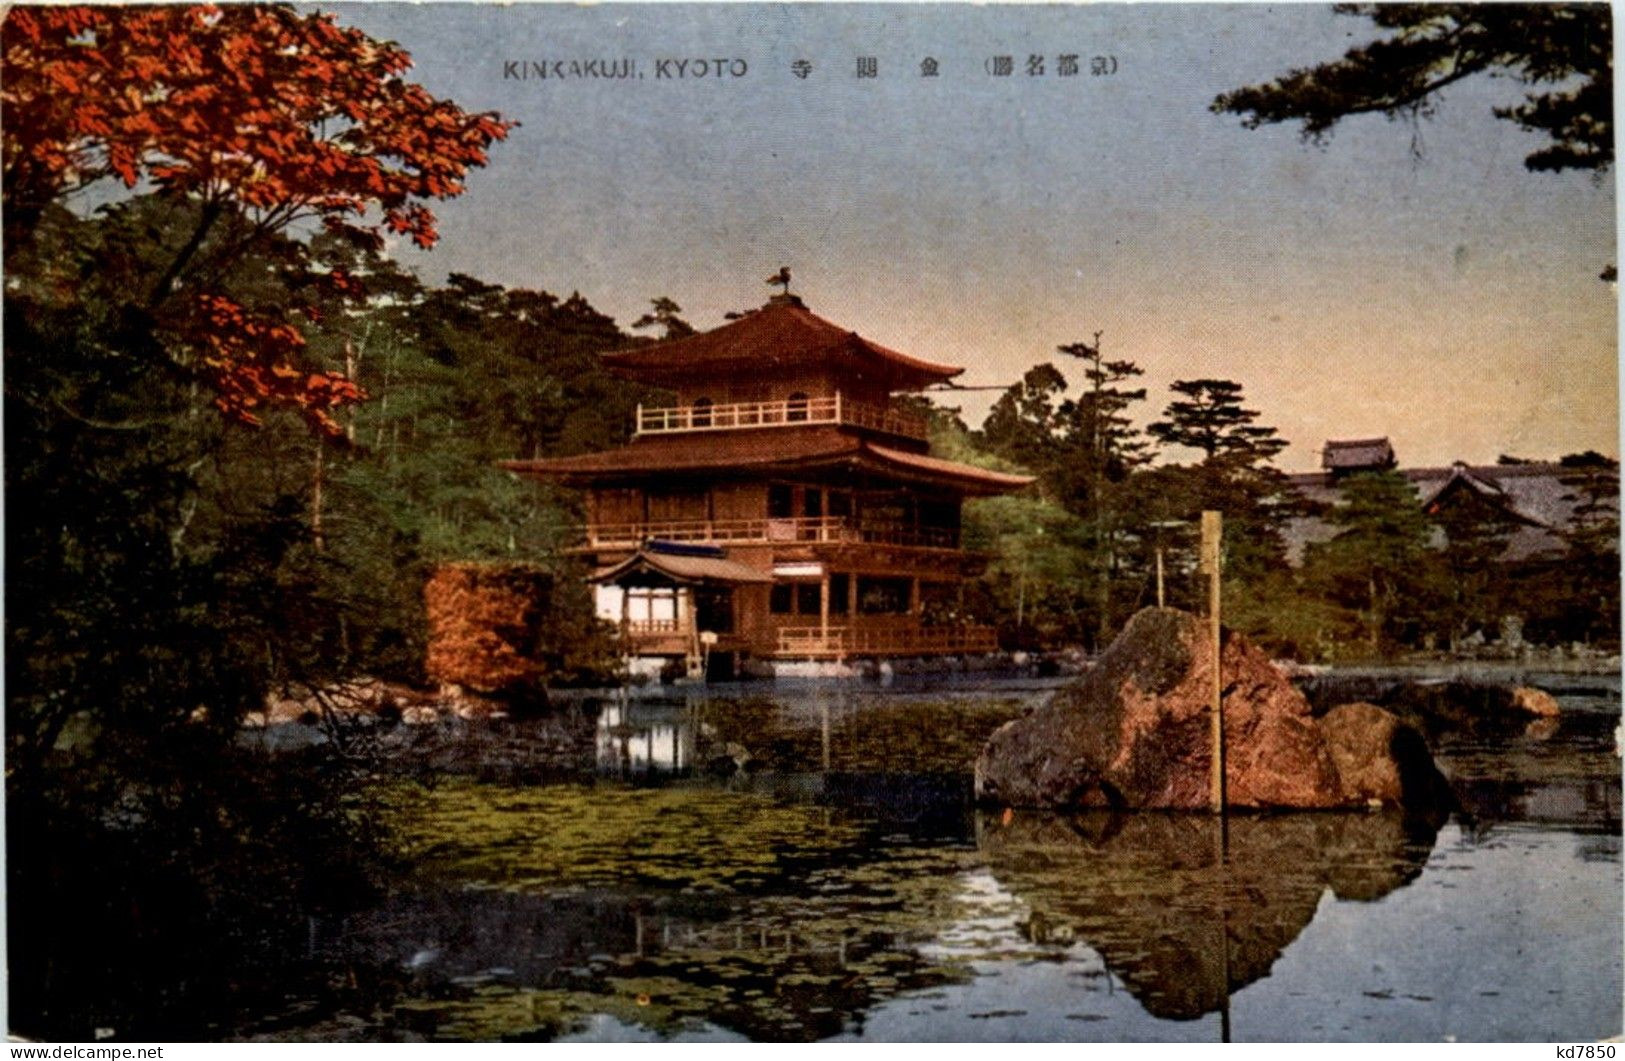 Kyoto - Kinkakuji - Kyoto